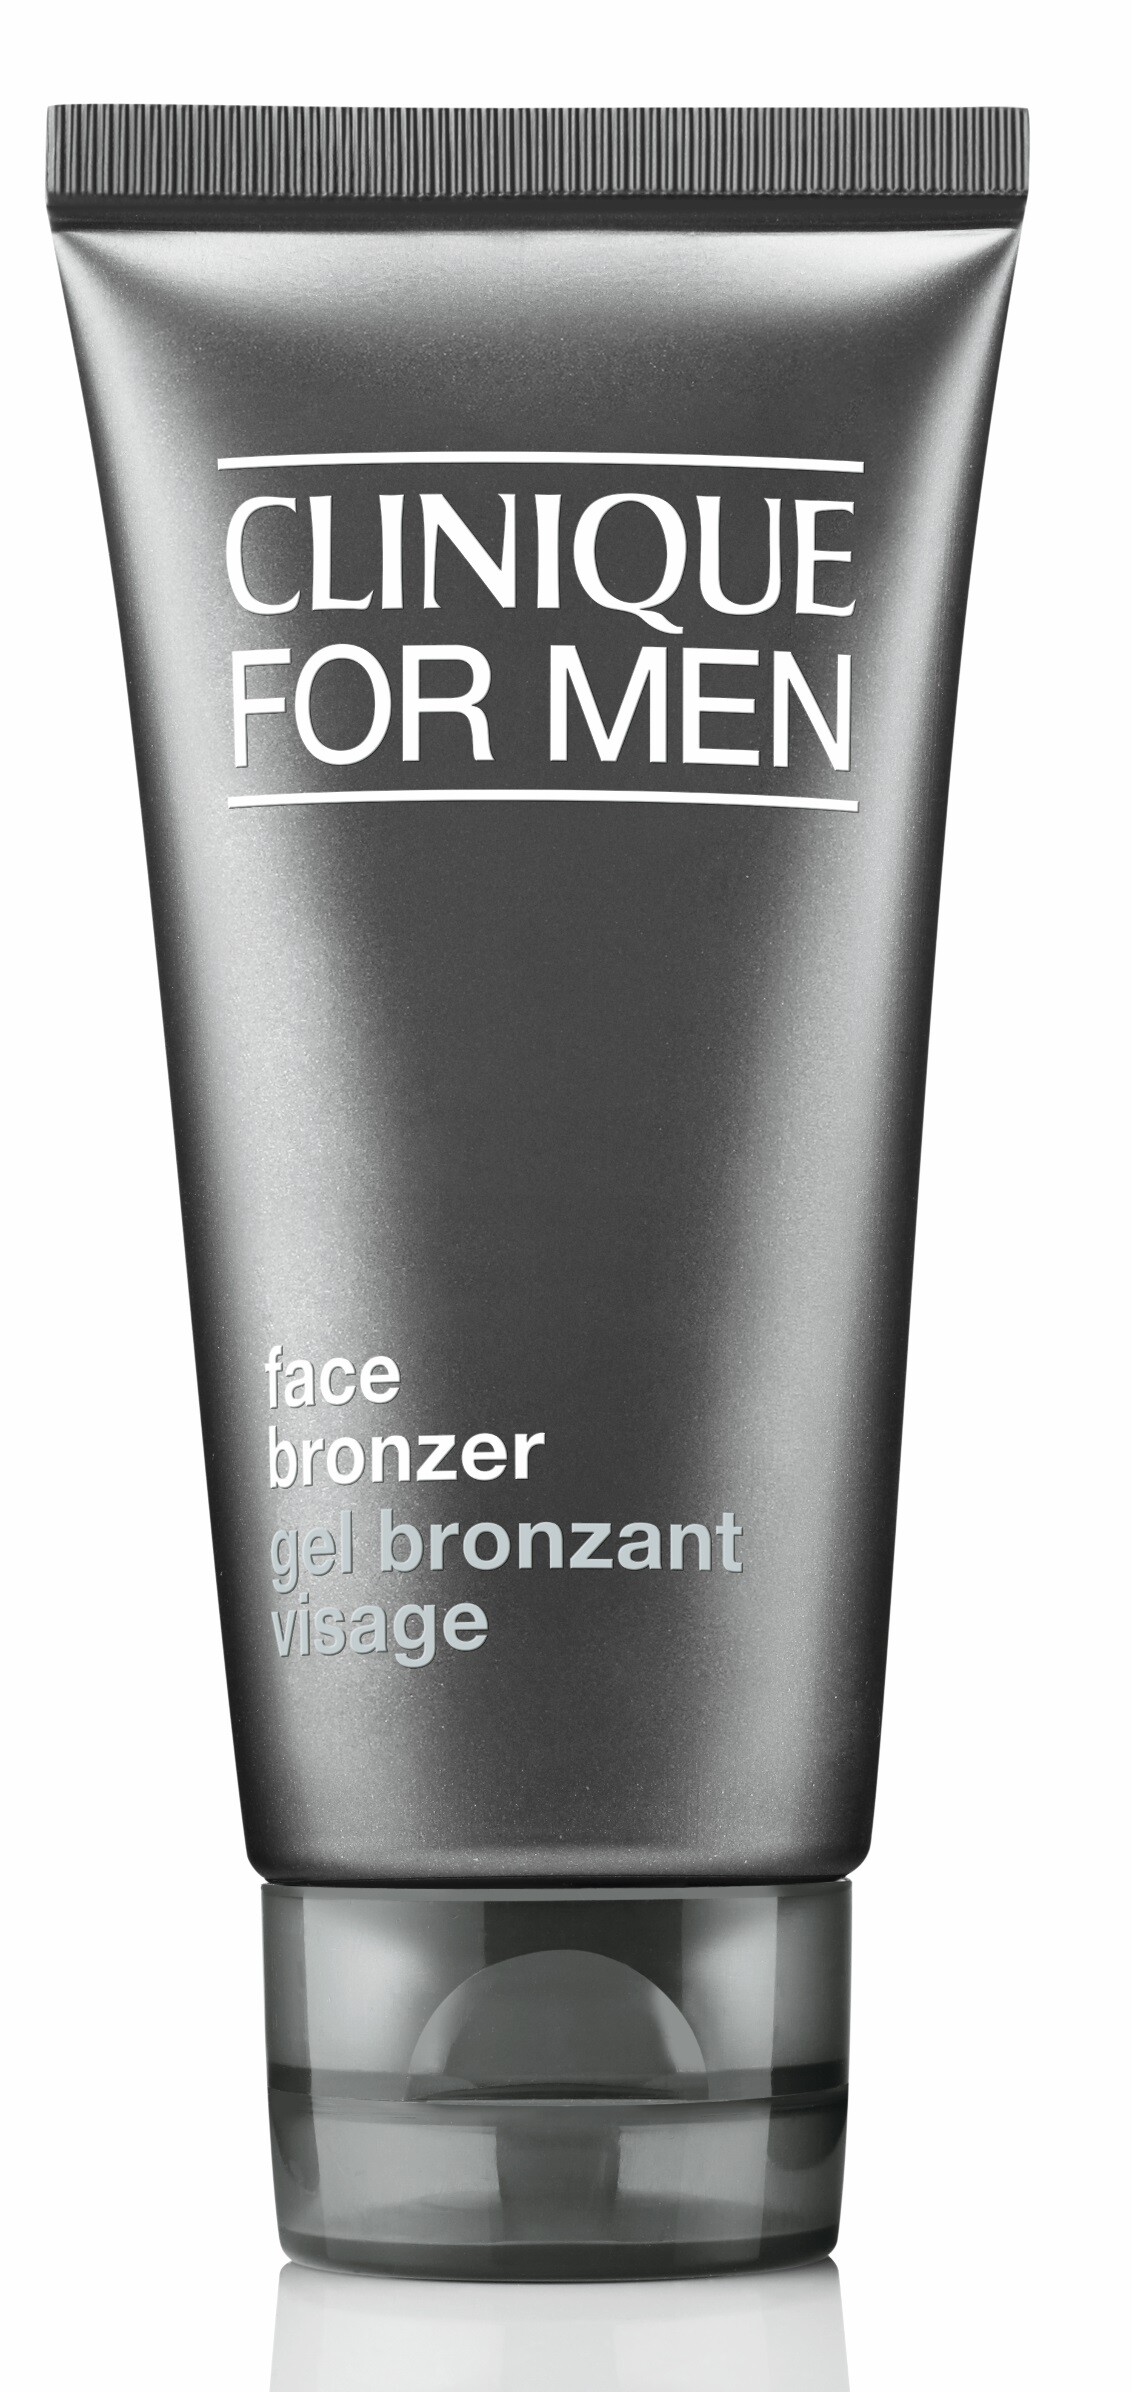 Clinique For Men™ Face Bronzer